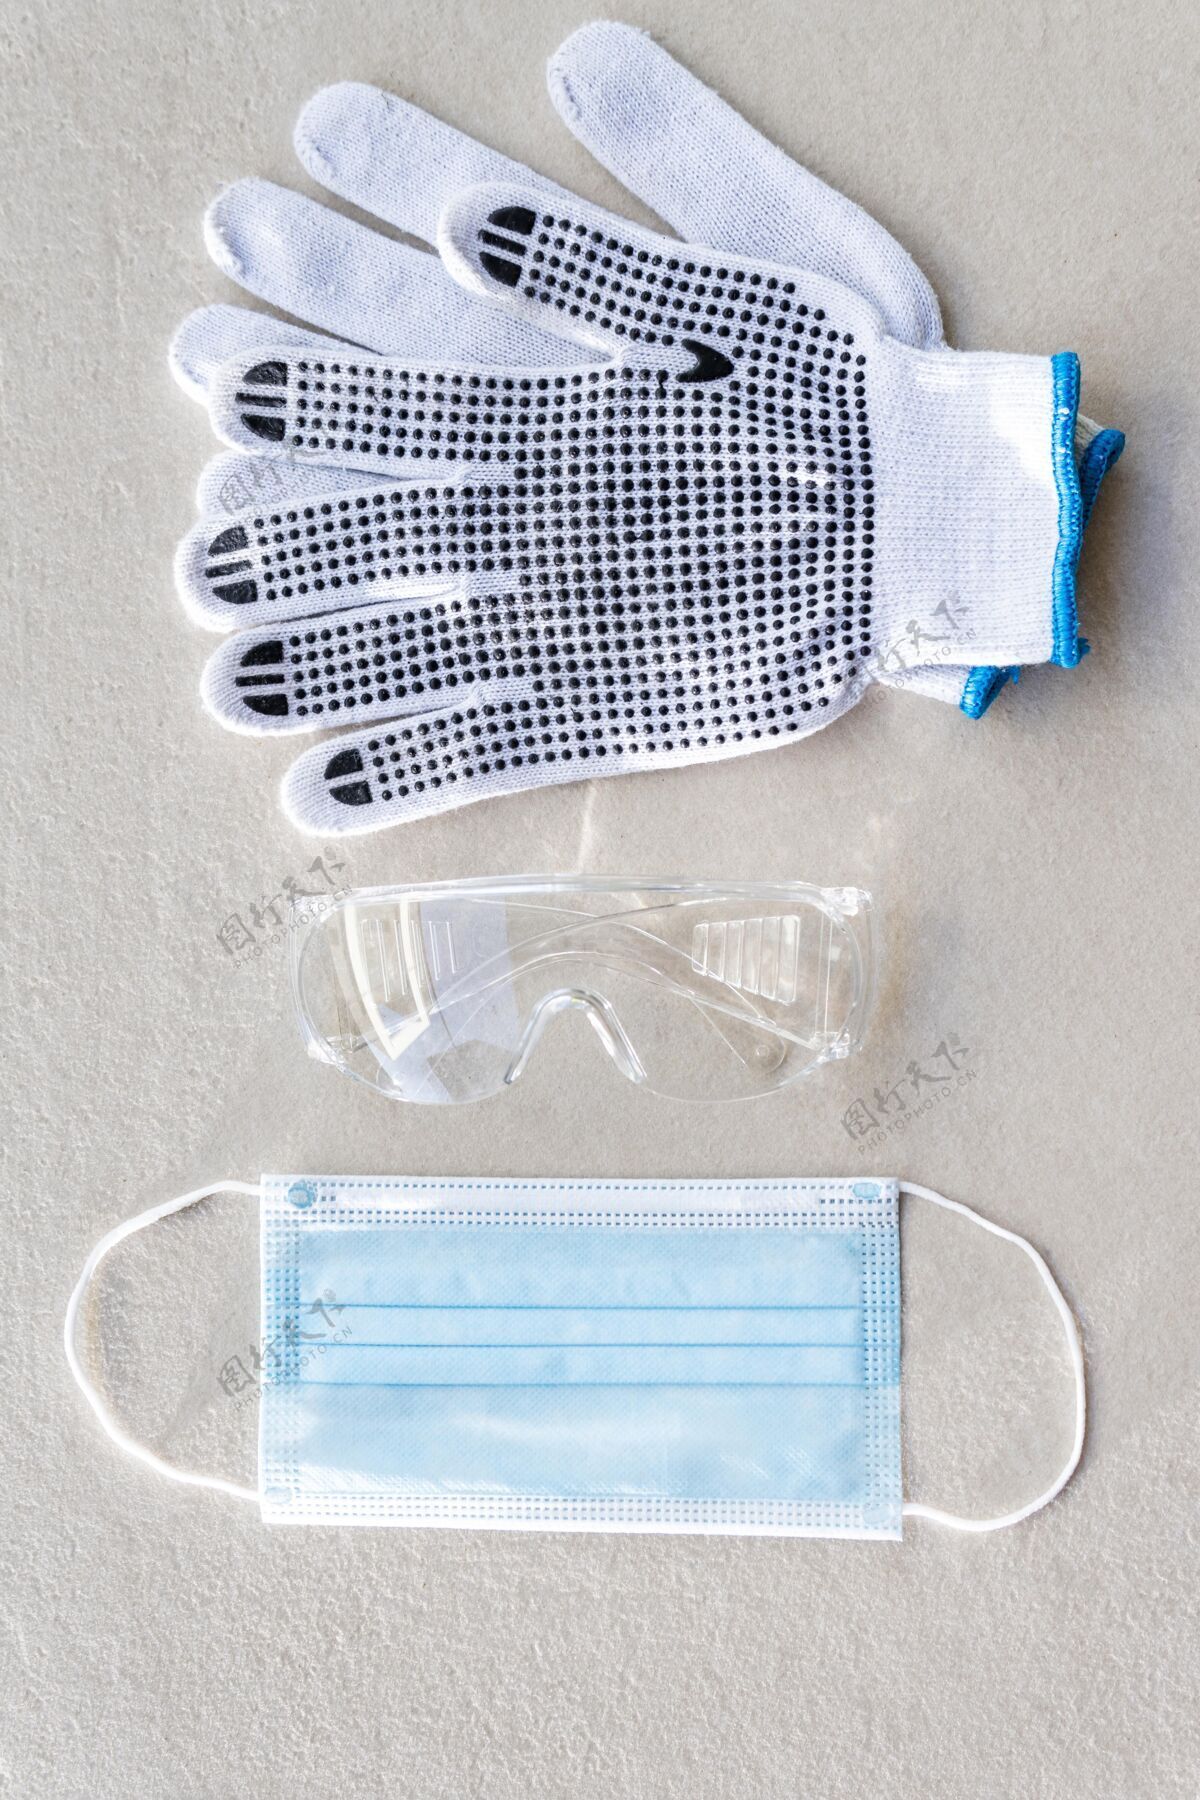 安全顶视图安全施工手套和医用面罩工具保护保护